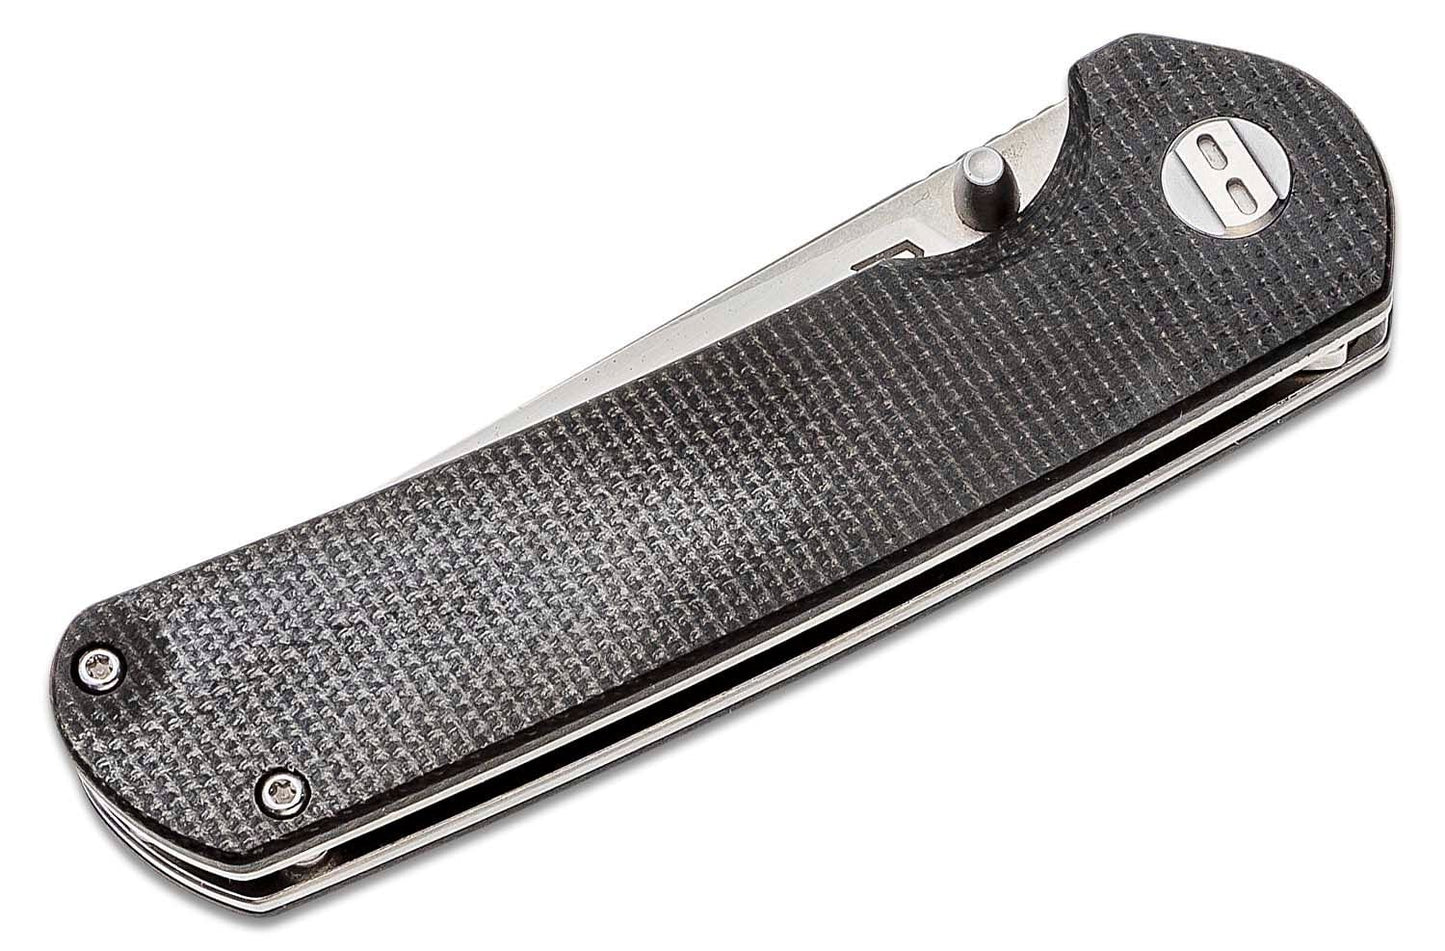 Bestech Knives Sledgehammer Folding Knife 3" D2 Two-Tone Blade, Black Micarta Handles - BG31C